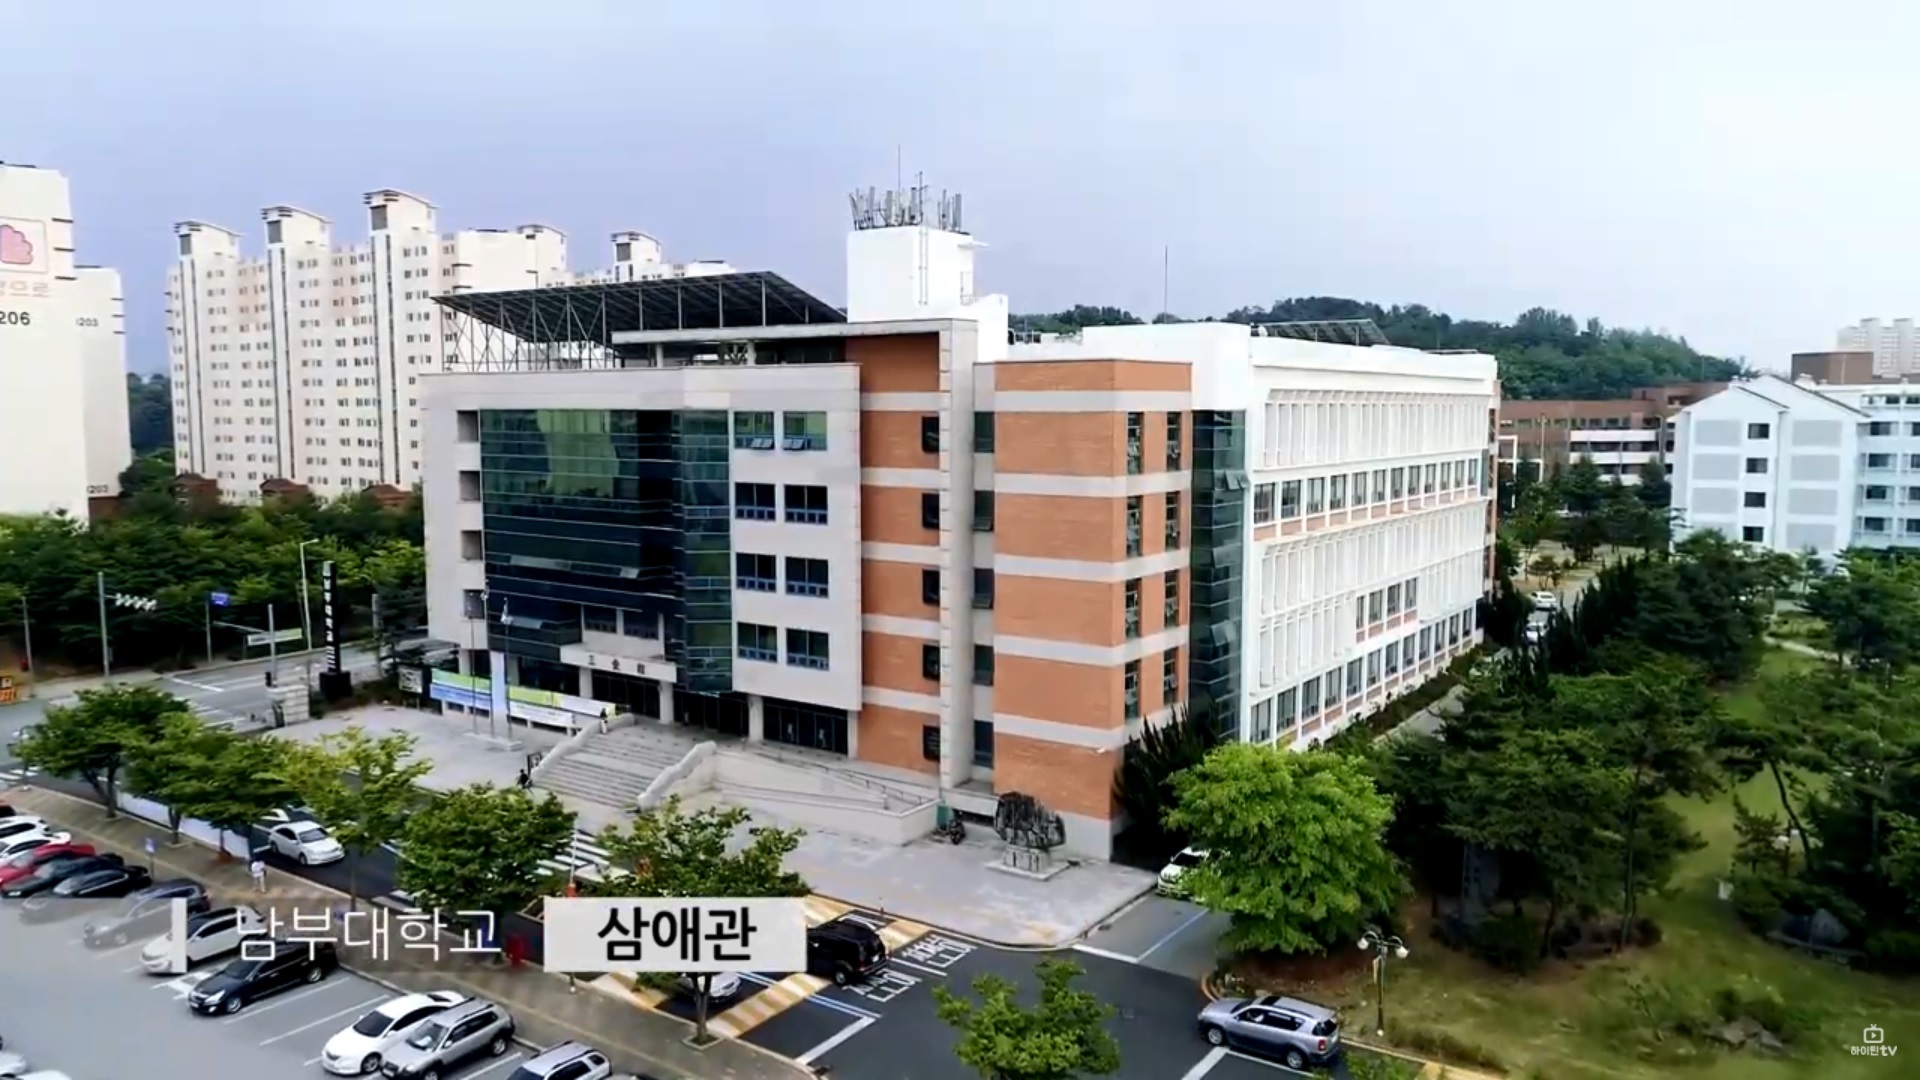 Video giới thiệu campus của Đại học Nambu